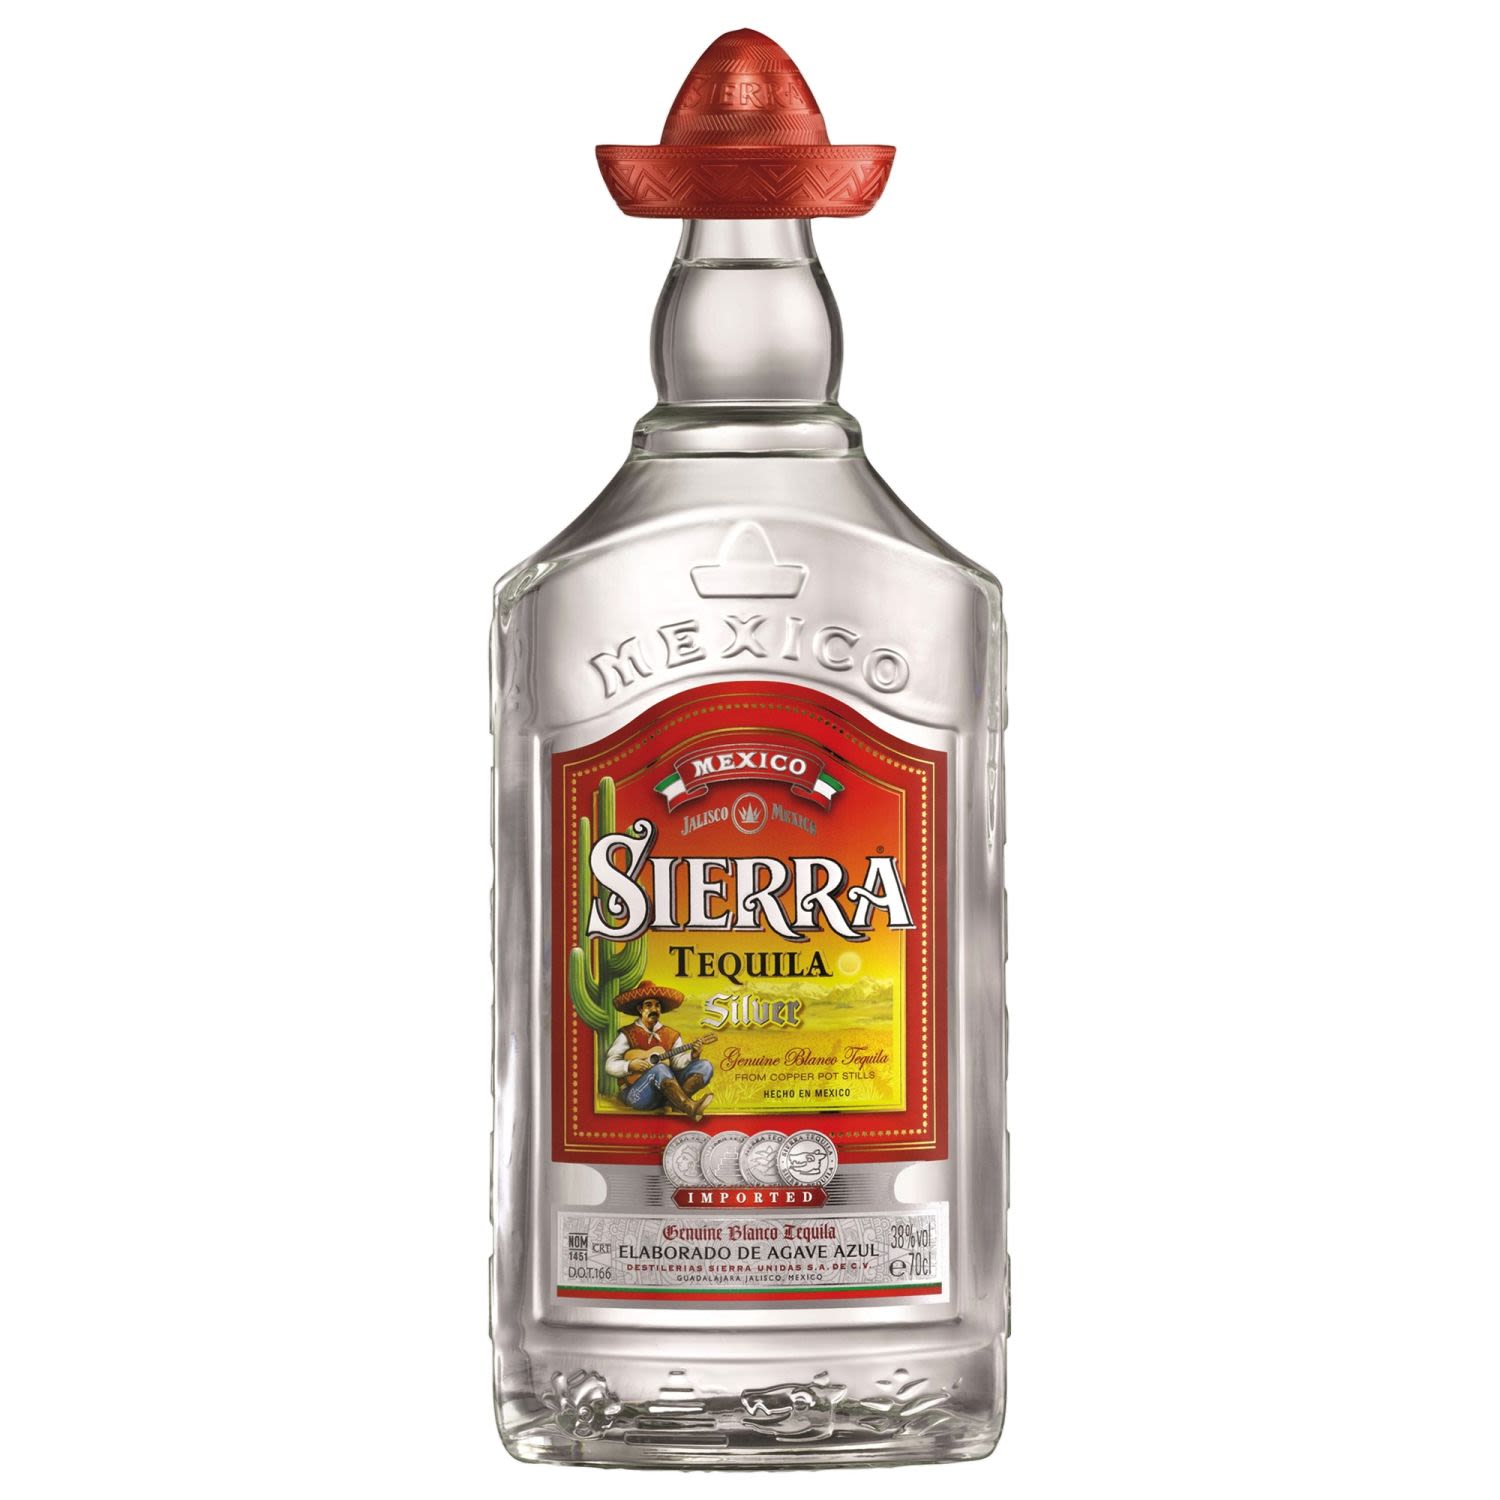 Sierra Tequila Silver 700mL Bottle